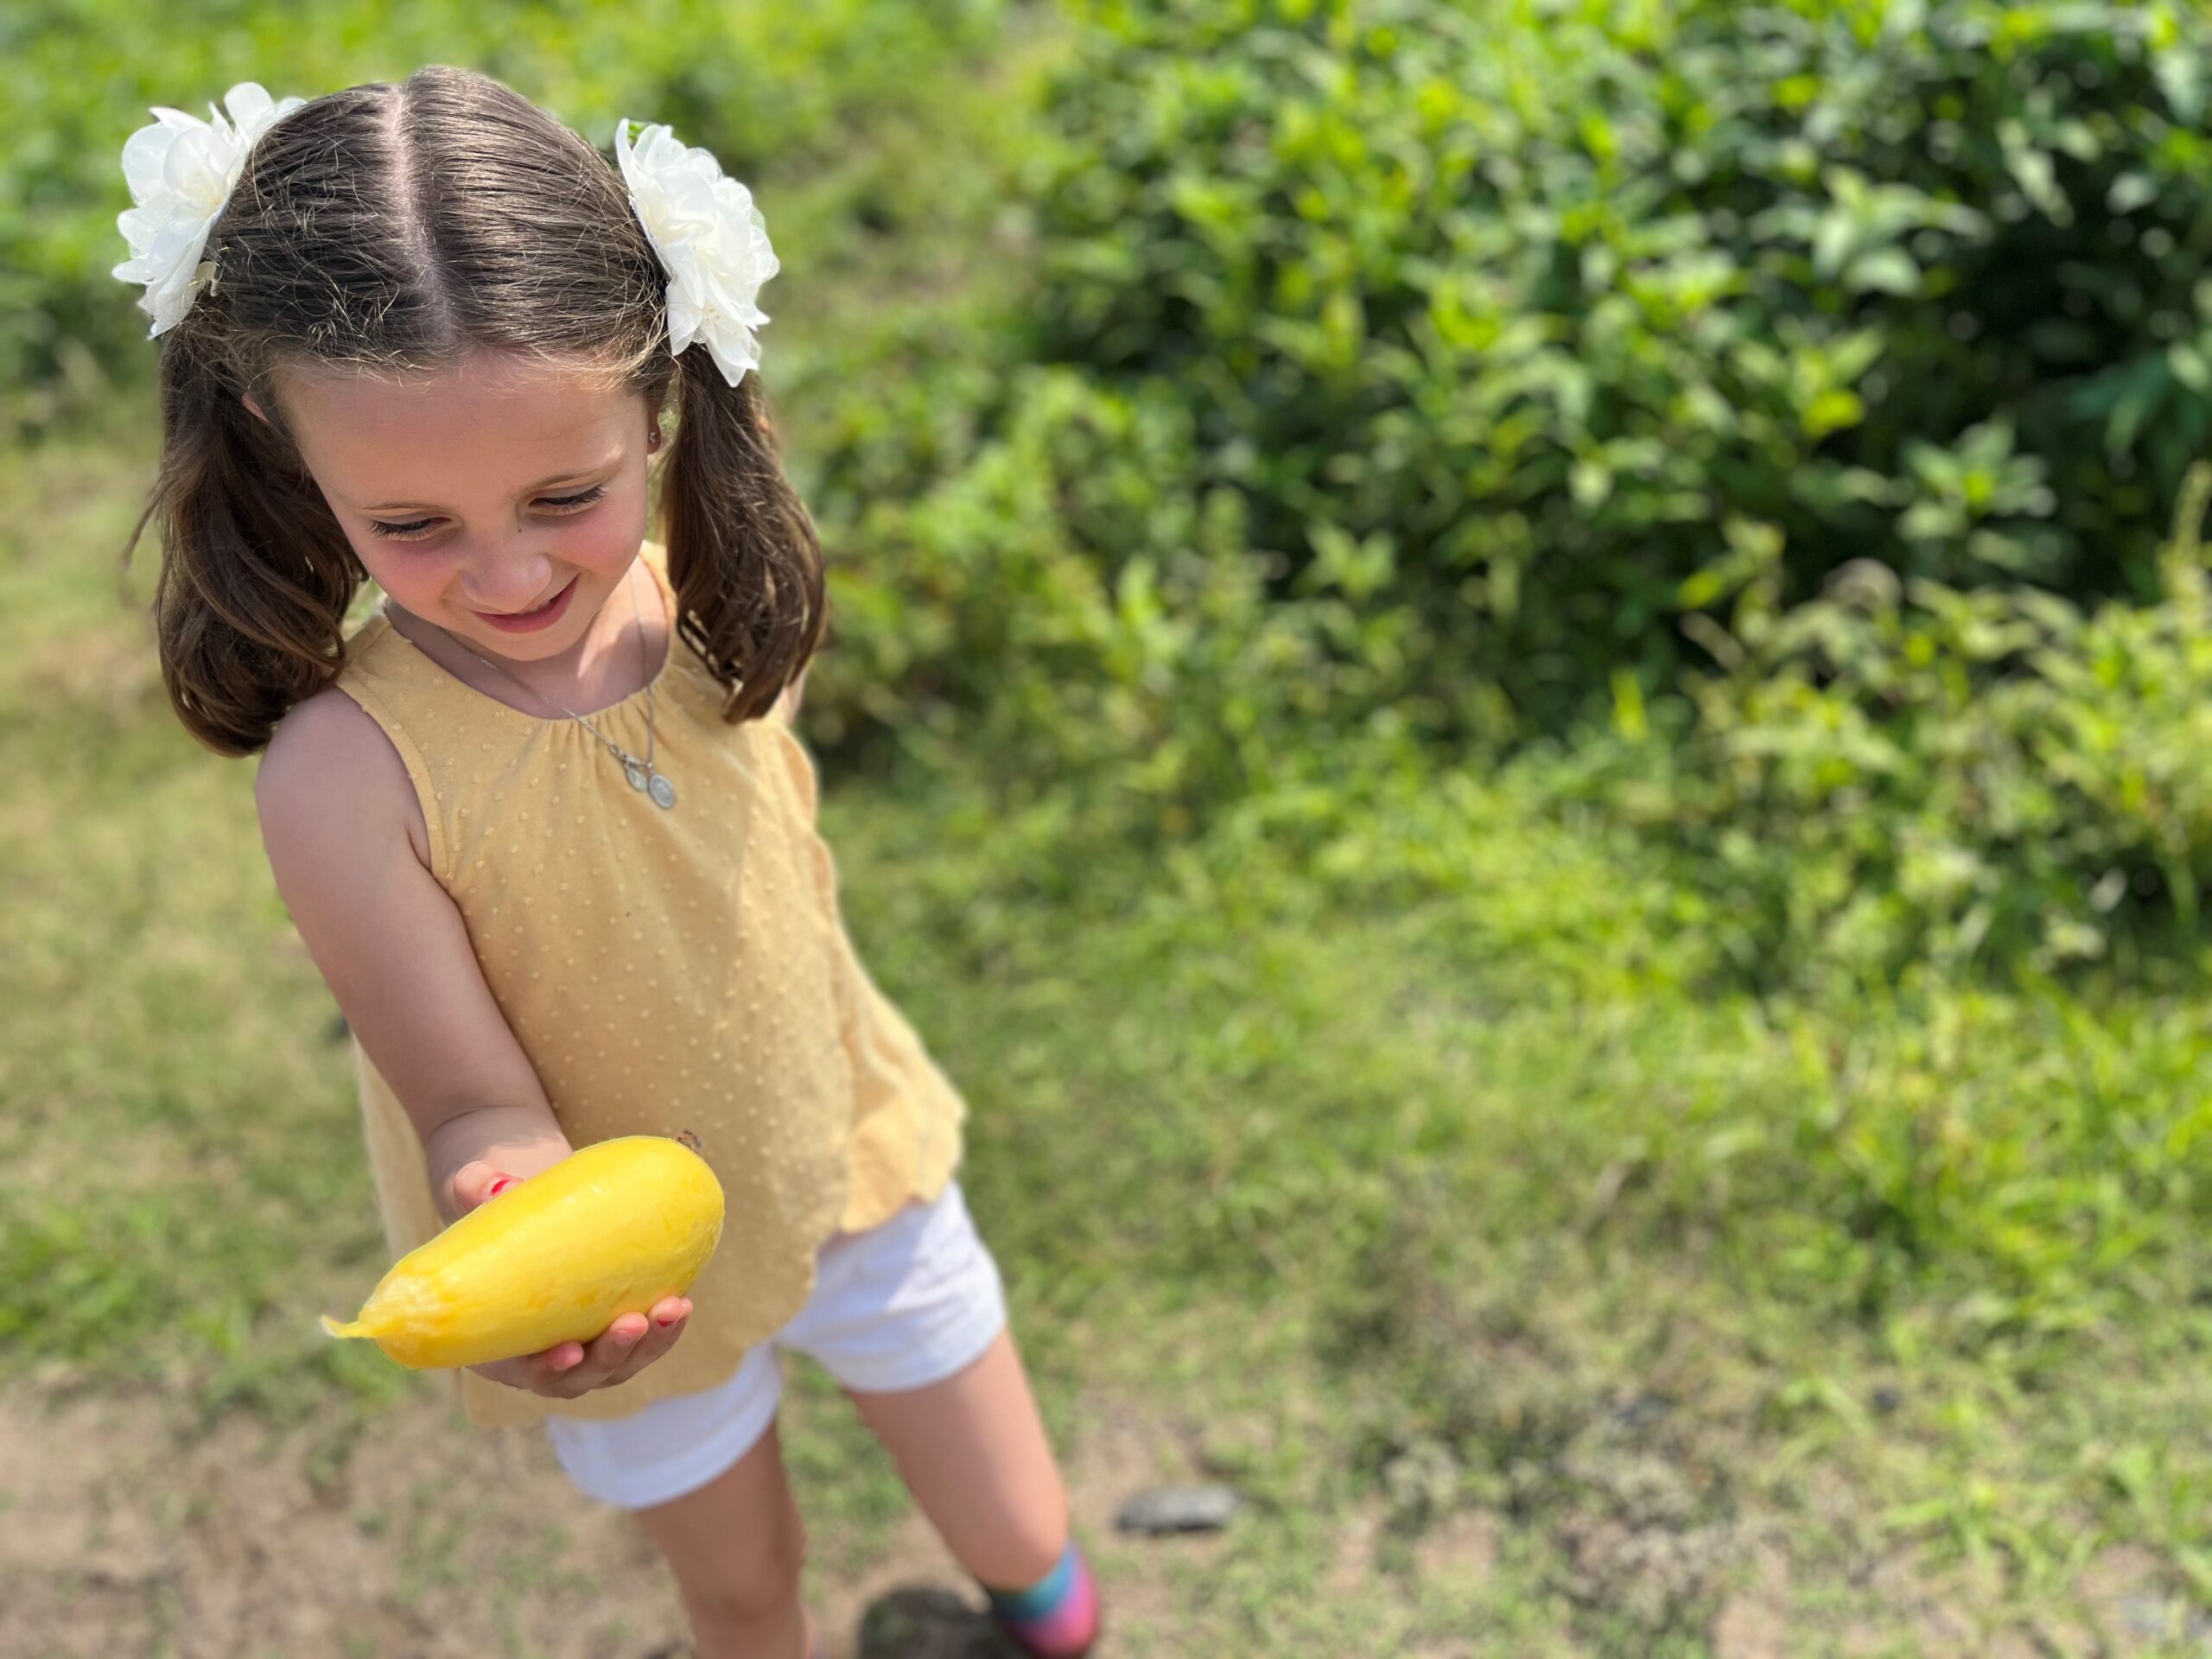 A cute little girl holding a fruit